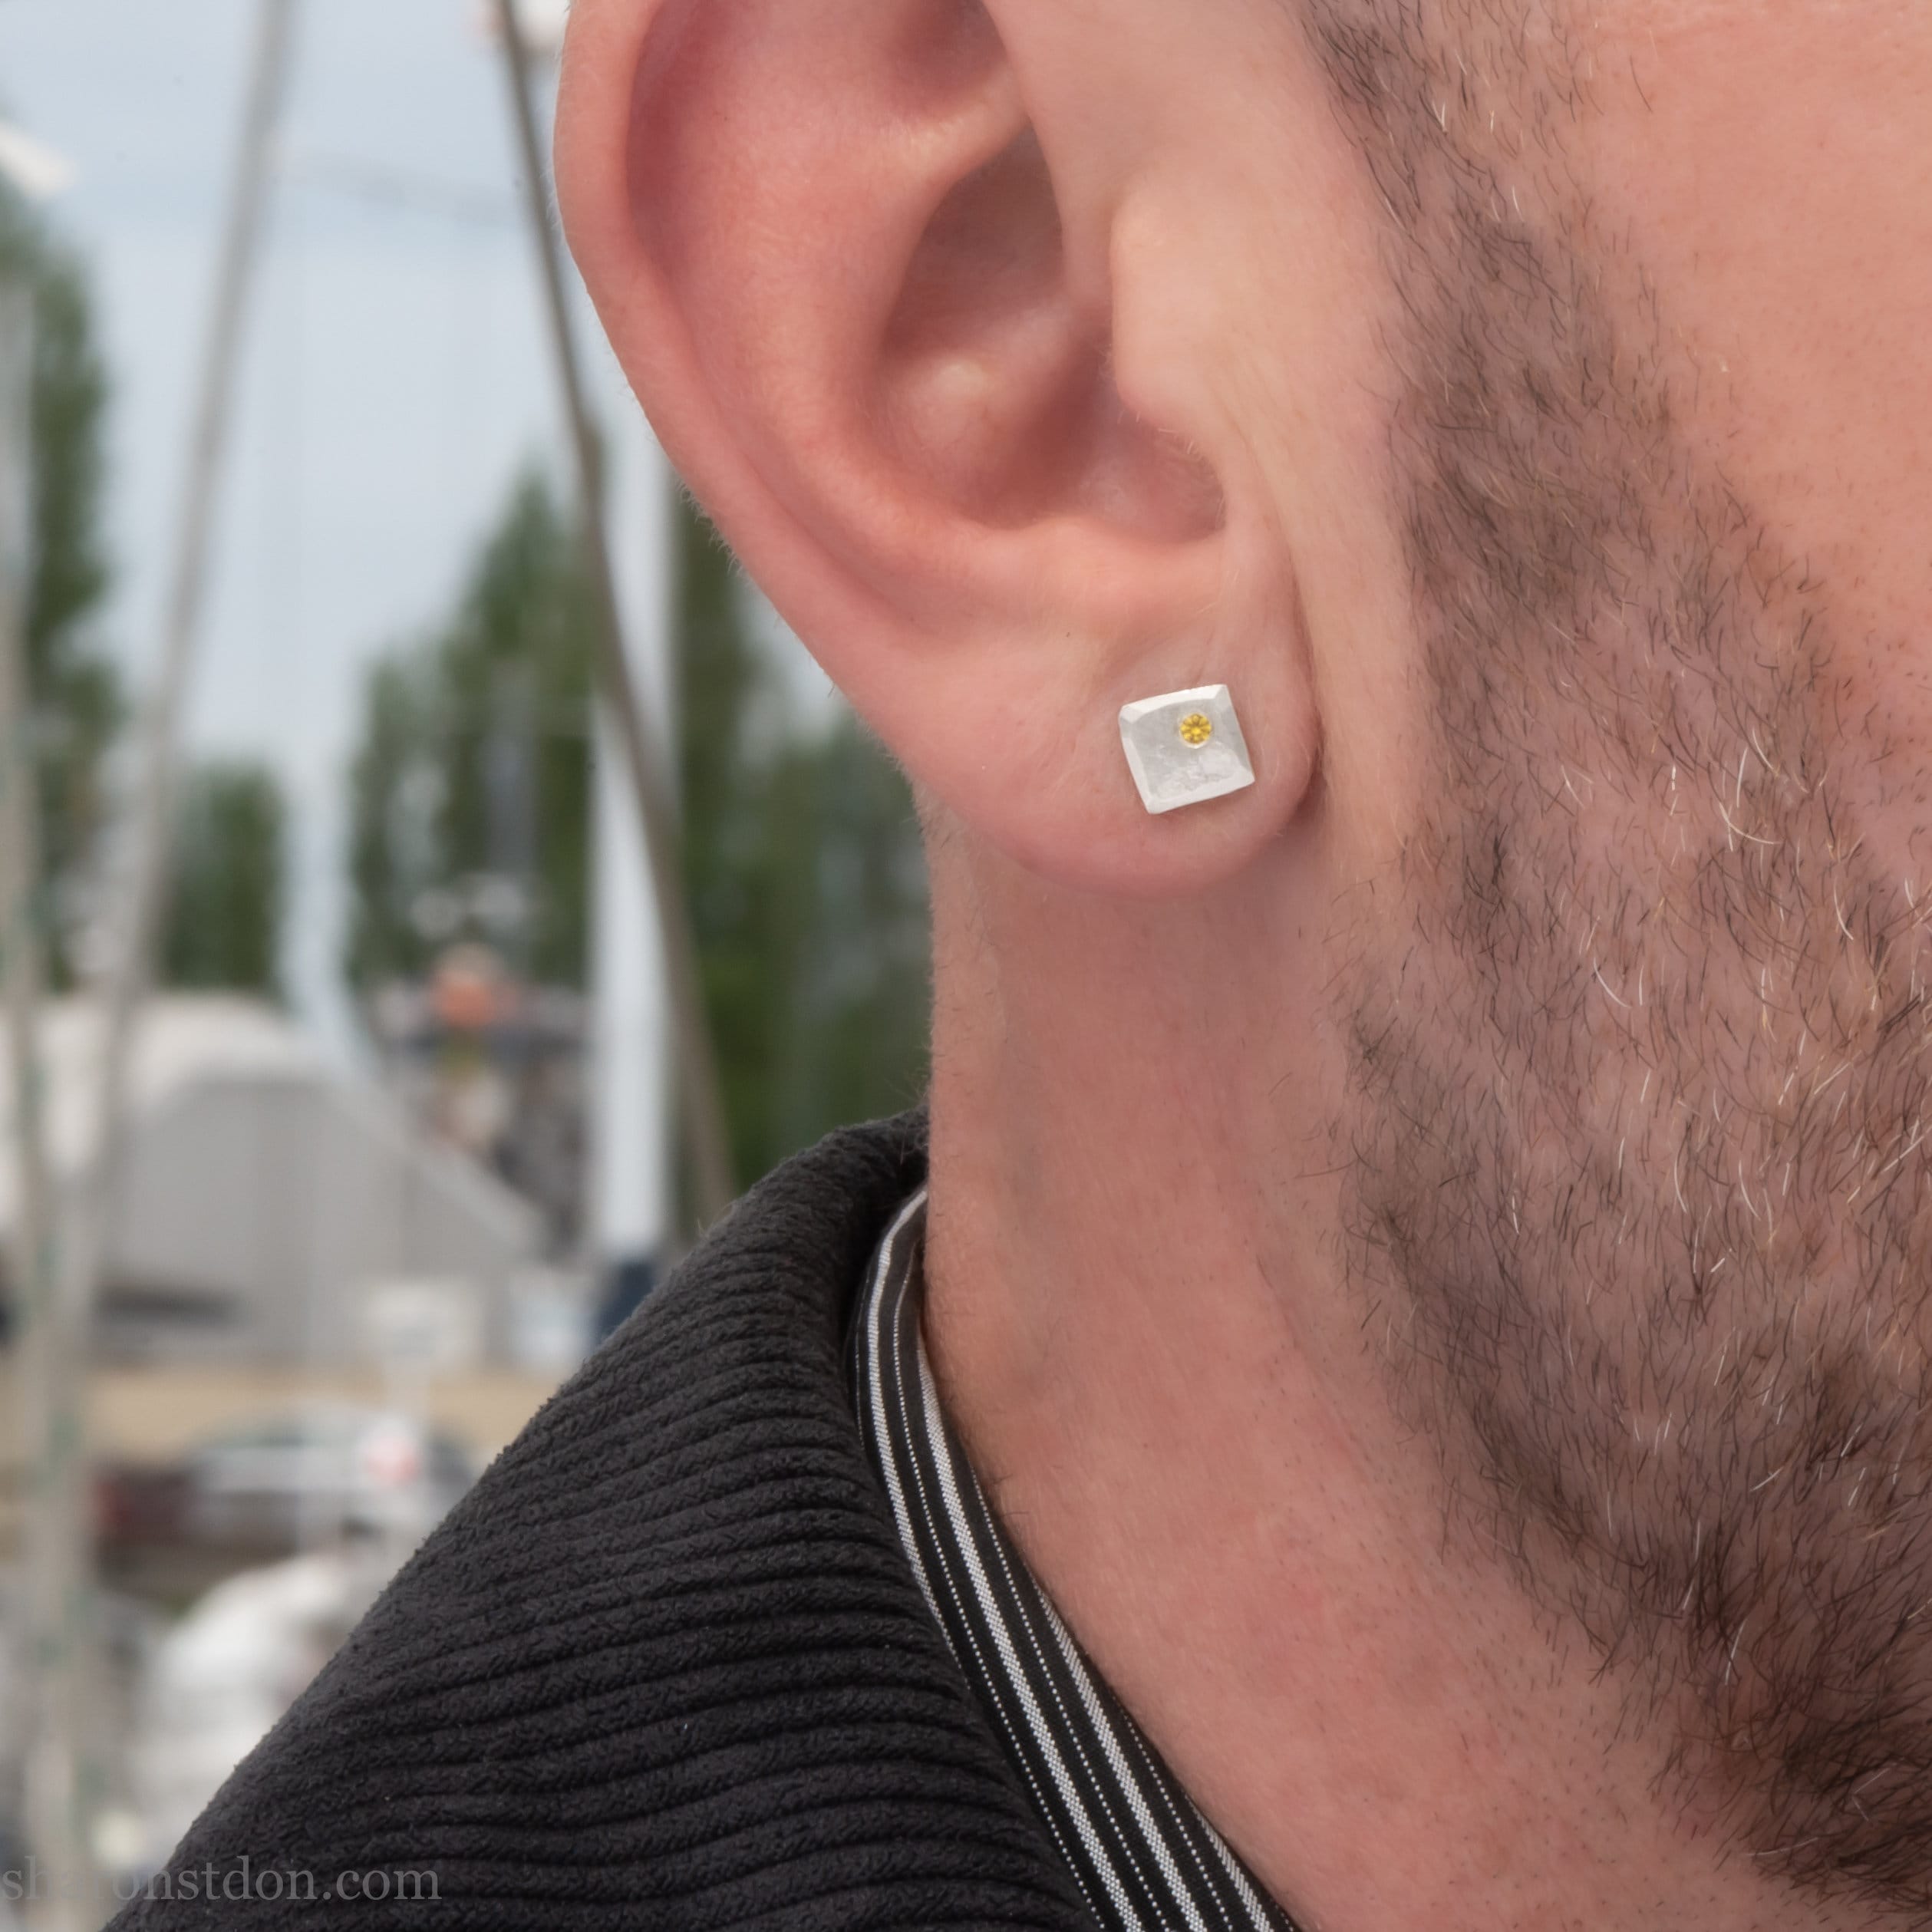 Details 246+ small earrings for men latest